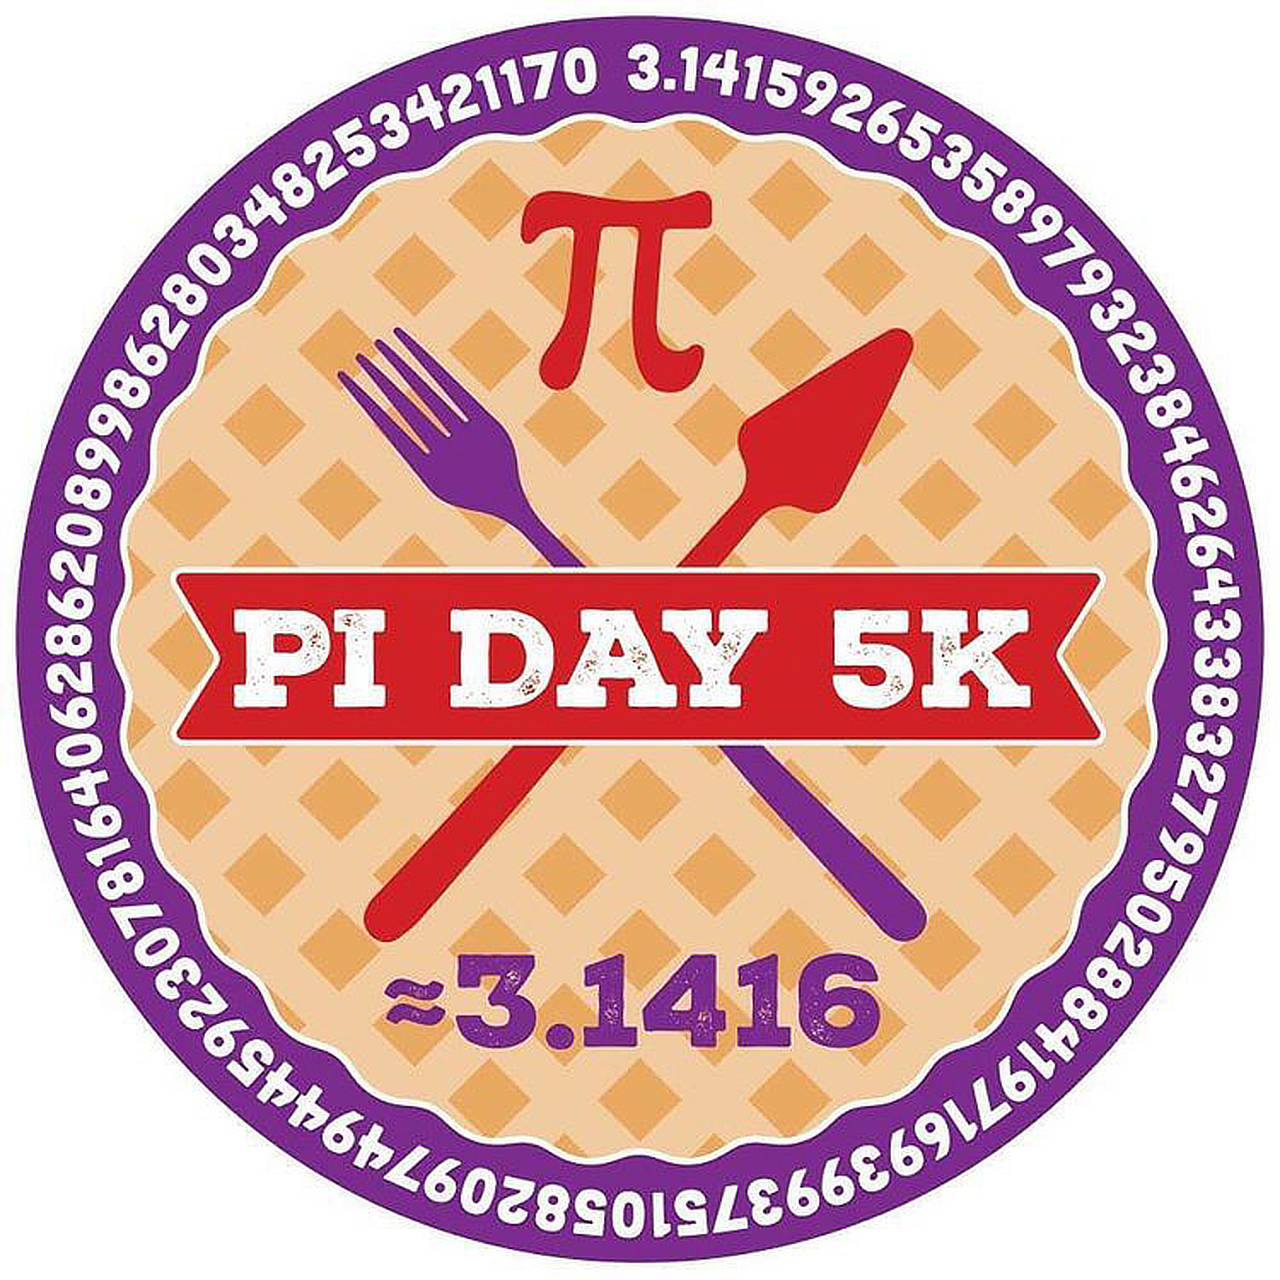 Pi Day 5K fun run